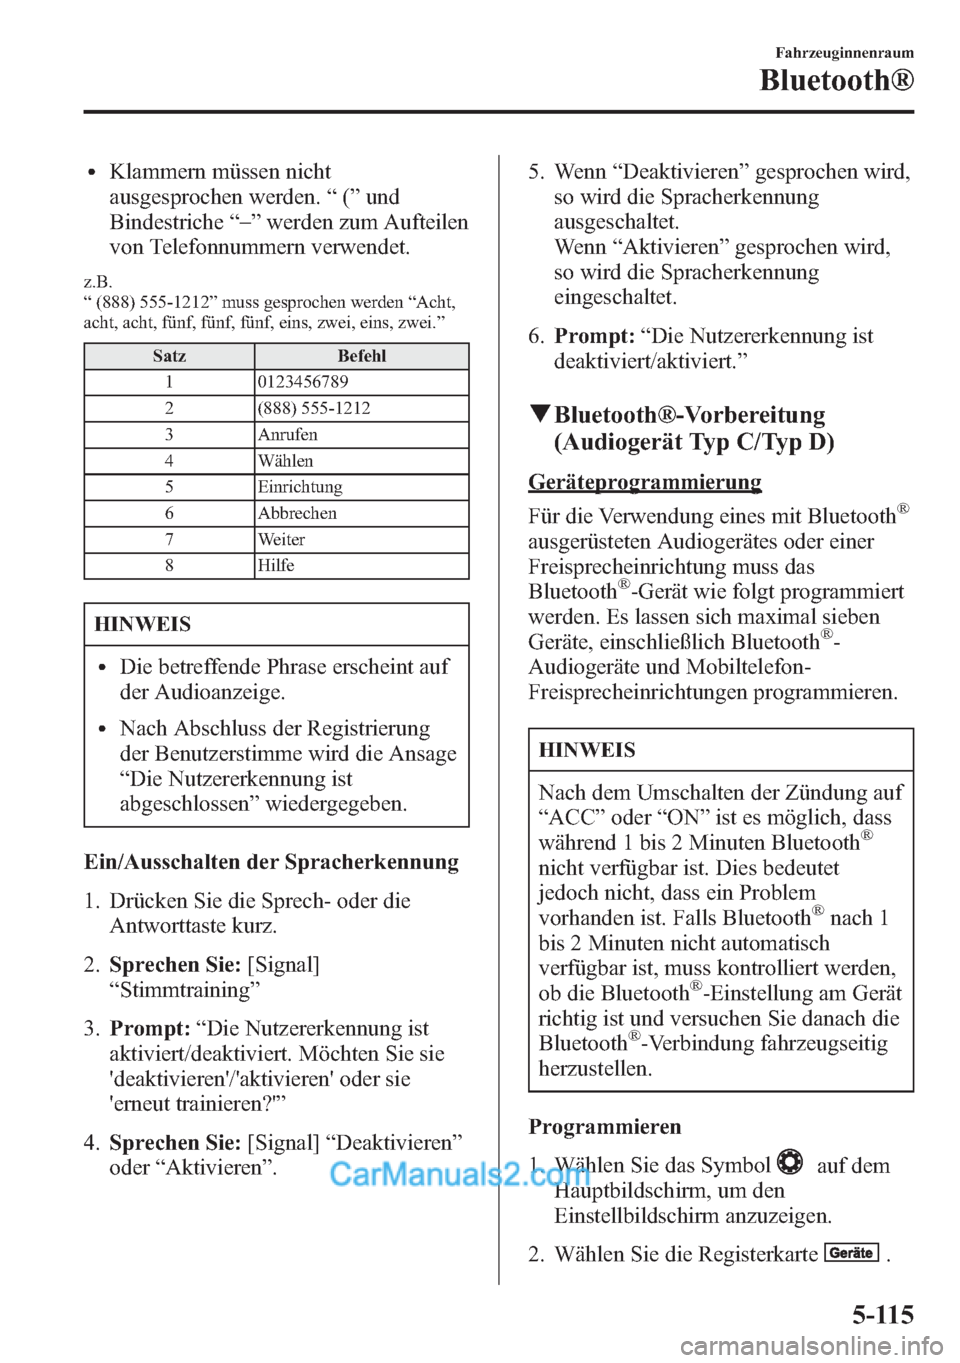 MAZDA MODEL CX-5 2015  Betriebsanleitung (in German) lKlammern müssen nicht
ausgesprochen werden.“(”und
Bindestriche“_
”werden zum Aufteilen
von Telefonnummern verwendet.
z.B.
“(888) 555-1212”muss gesprochen werden“Acht,
acht, acht, fünf